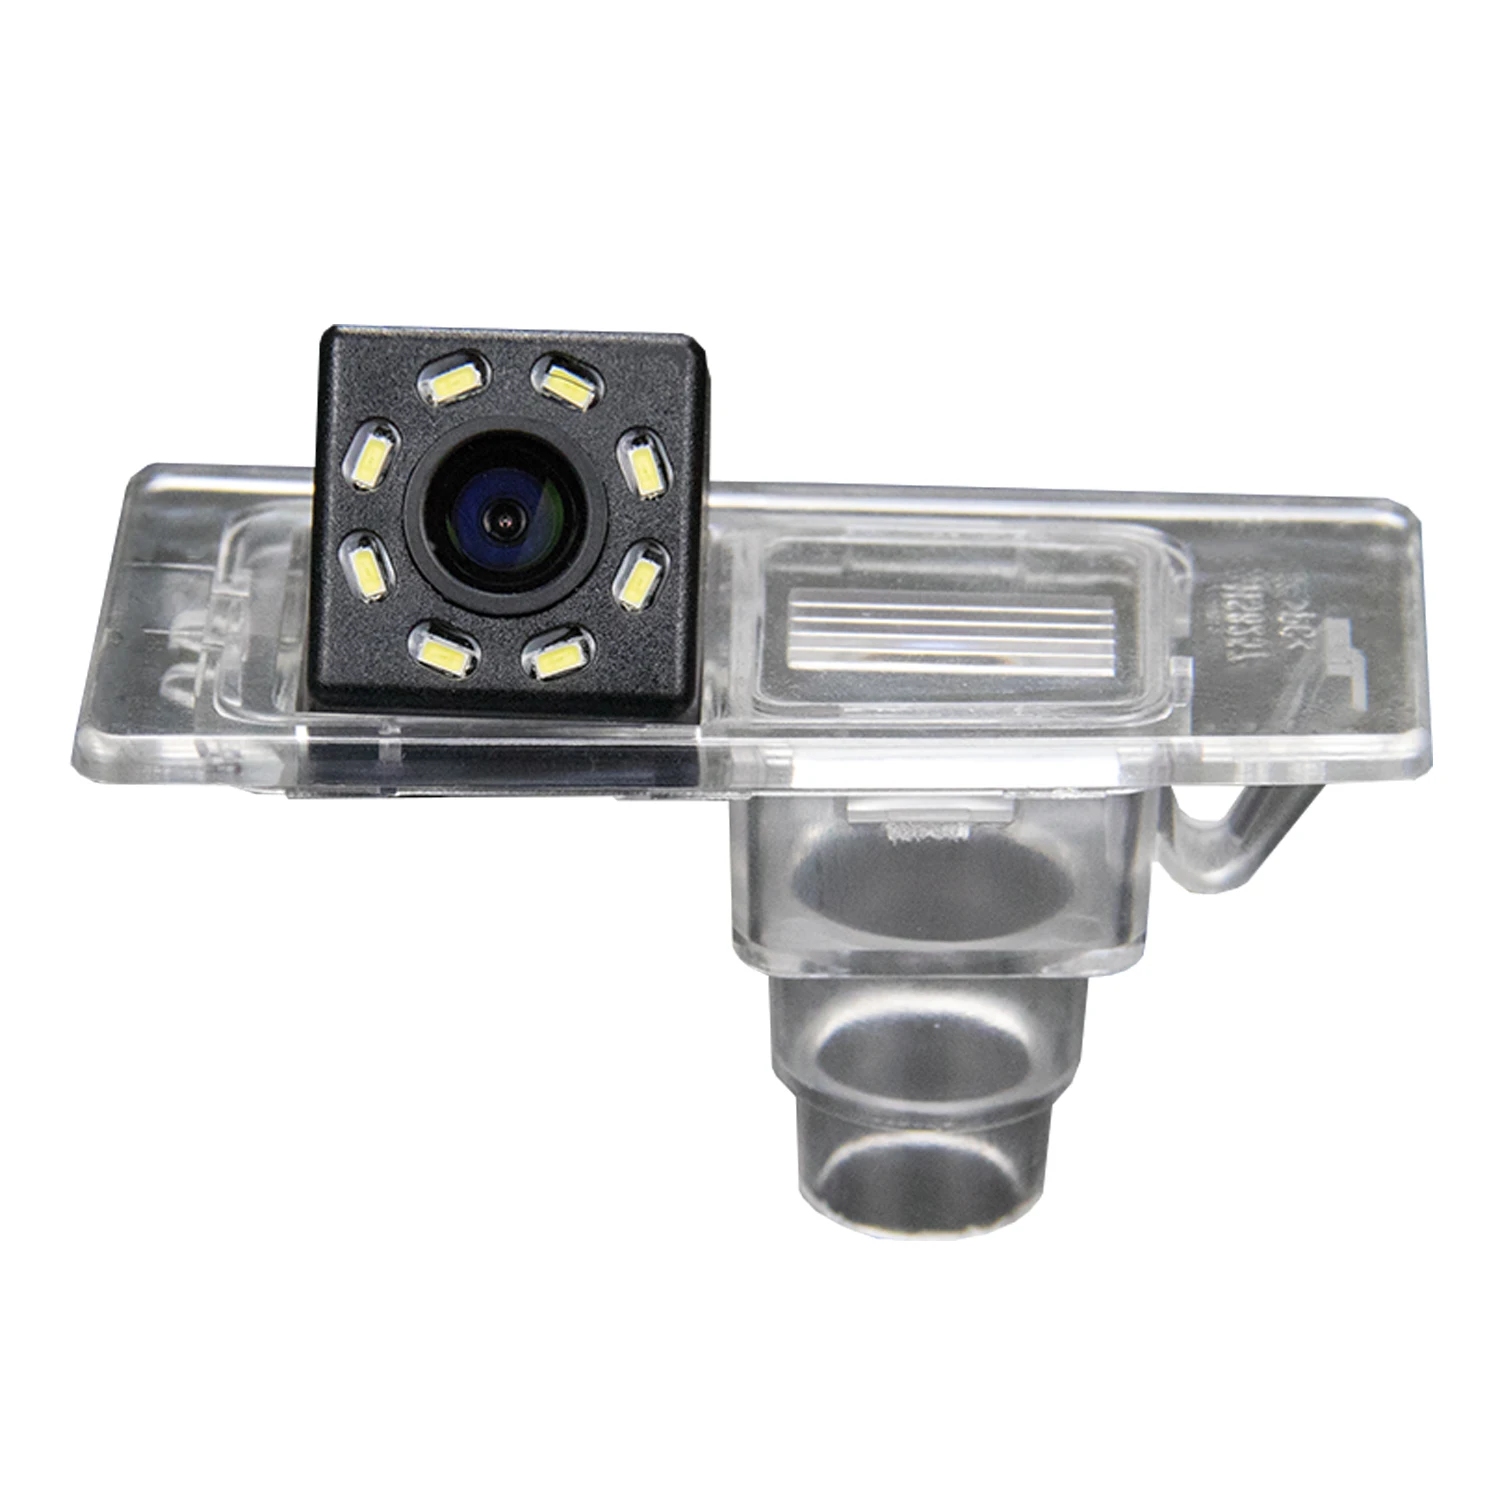 

HD-камера заднего вида со встроенной подсветкой для Hyundai Elantra Avante 2011-2013, Реверсивный водонепроницаемый номерной знак, фотокамера для парковки